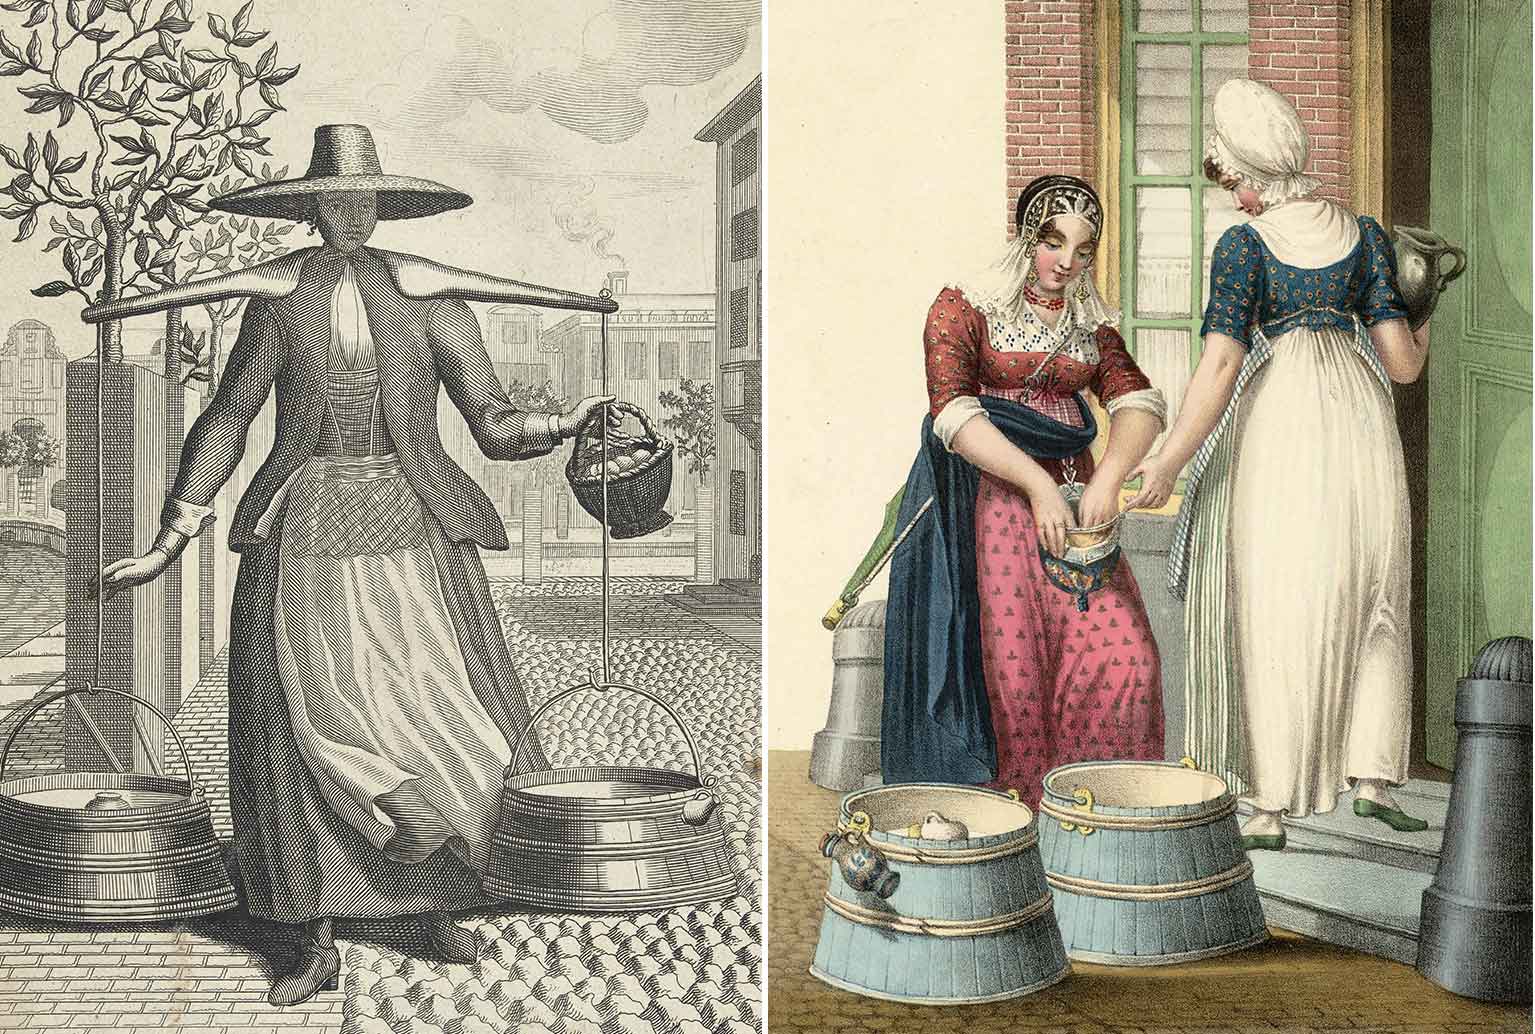 Links een Waterlands melkmeisje rond 1700, rechts een melkmeisje dat aan een dienstmeid verkoopt